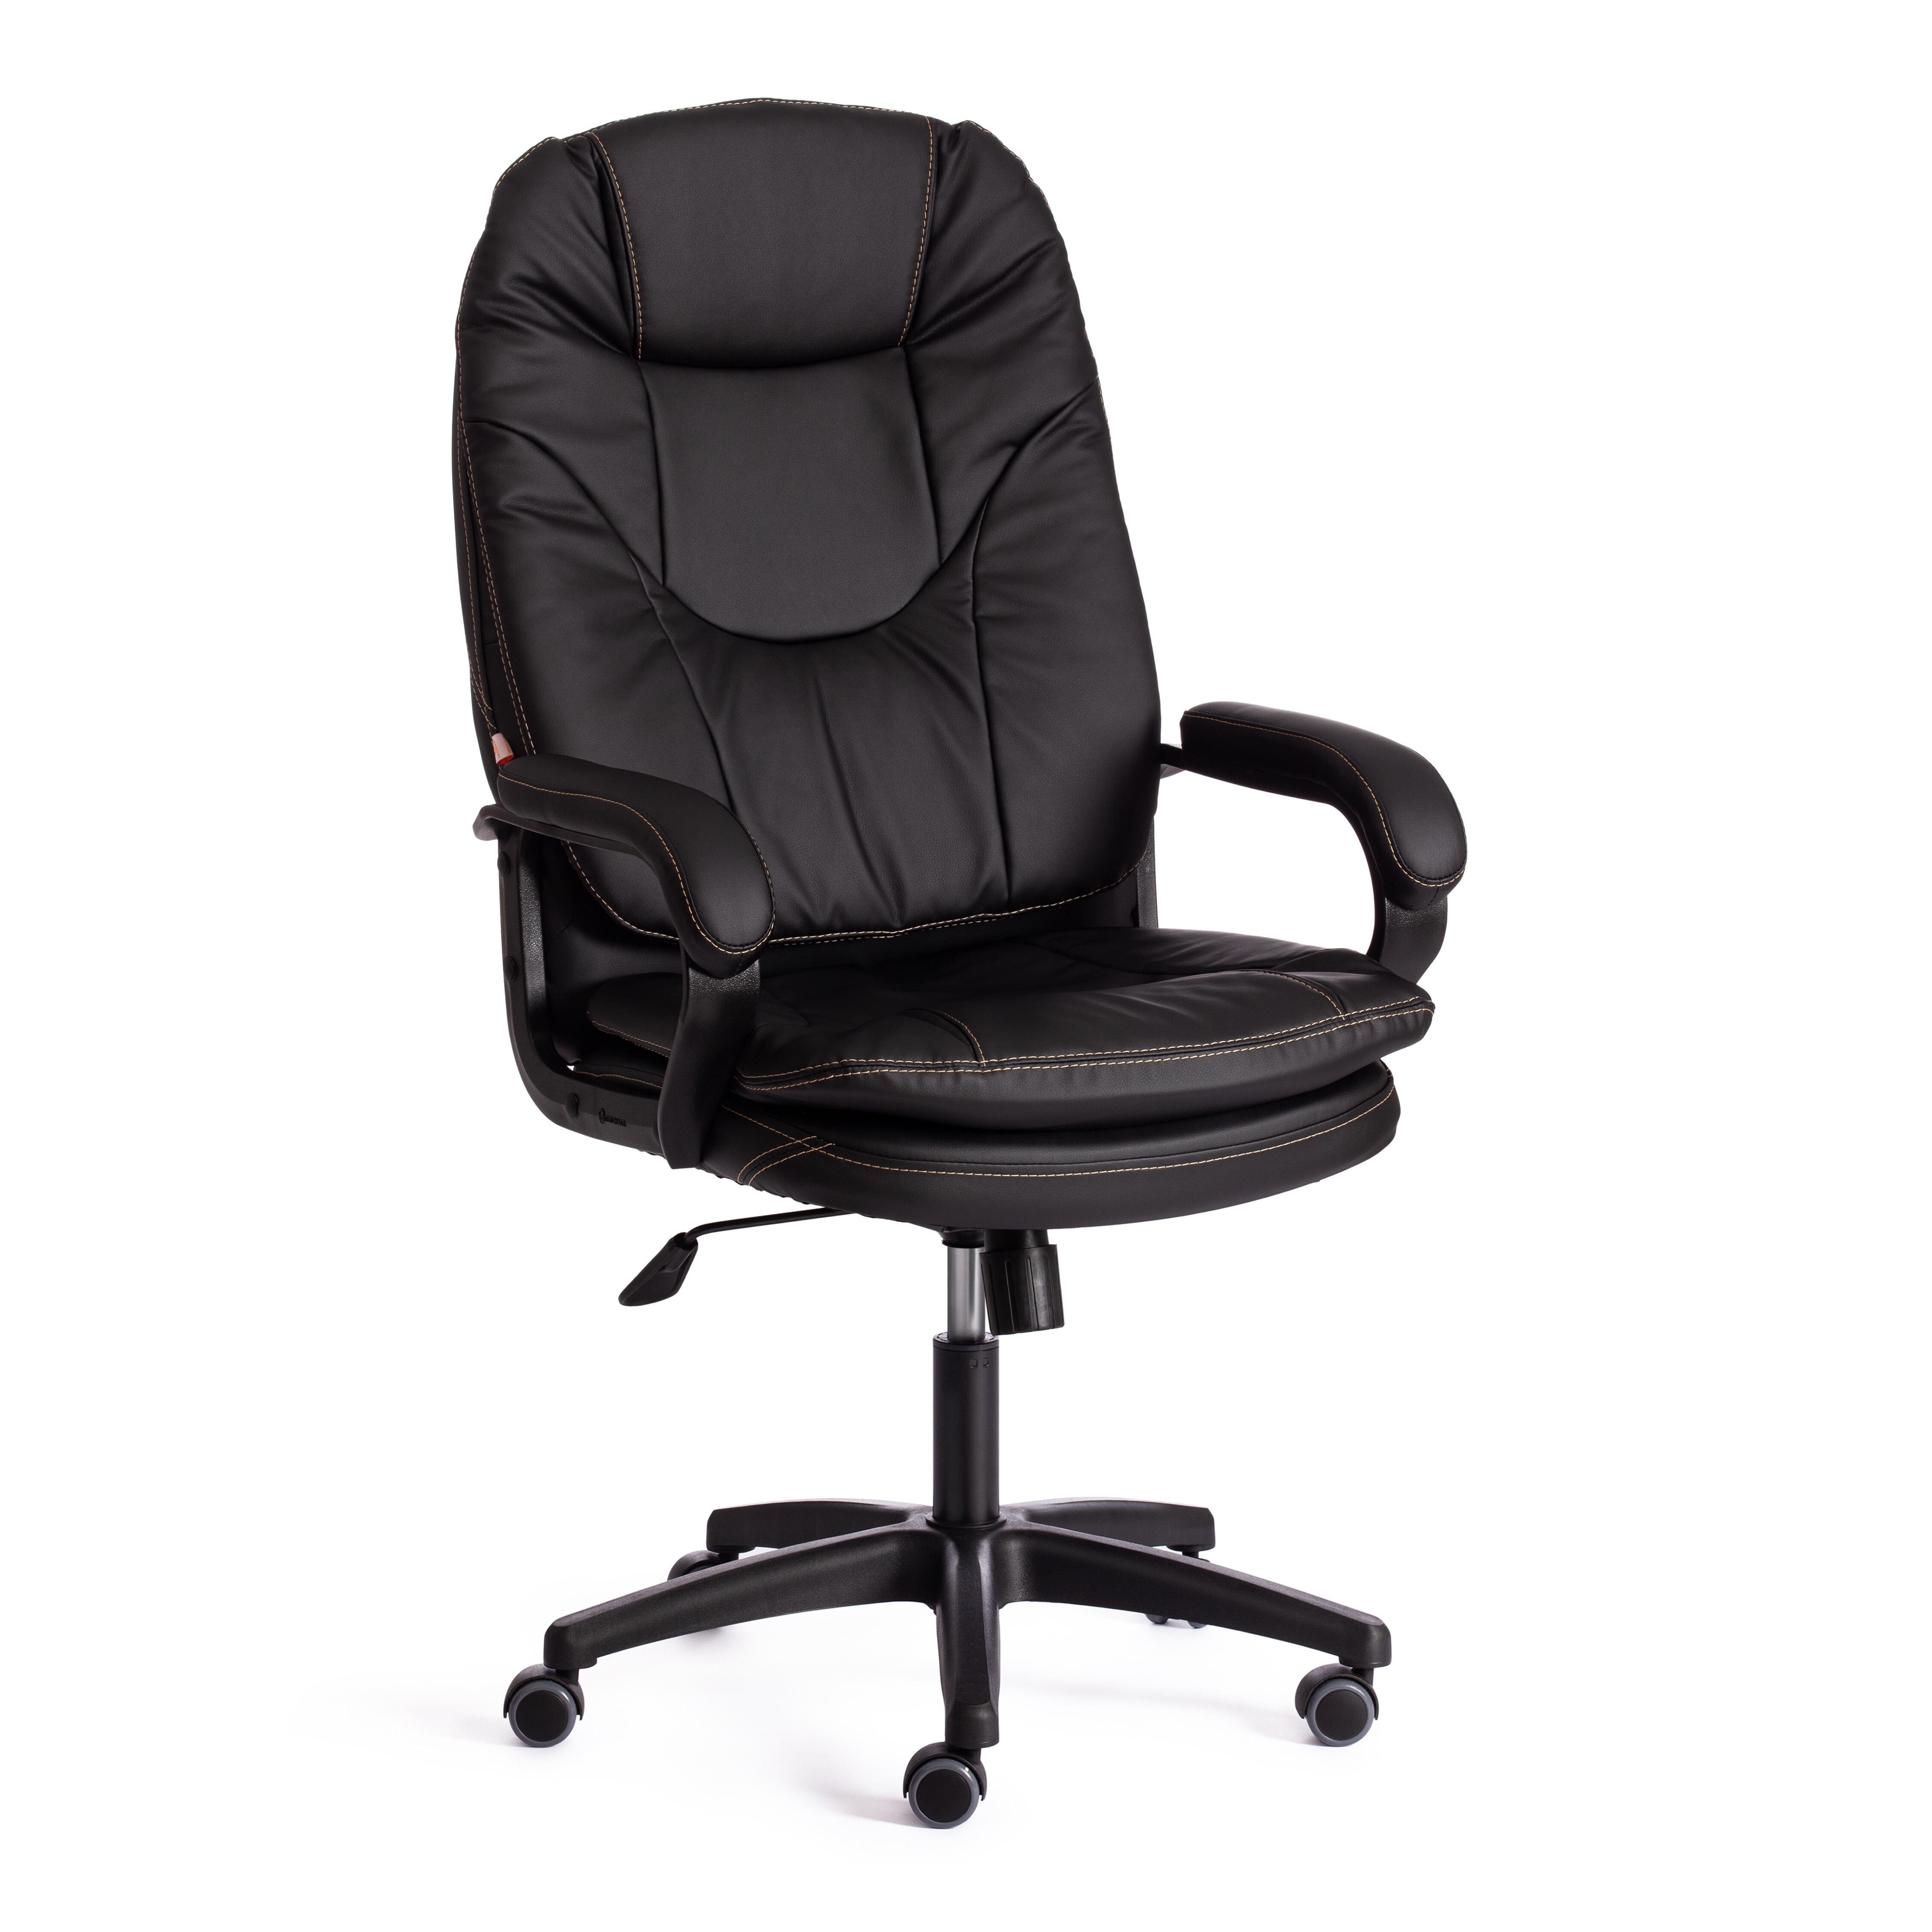 Кресло офисное с подлокотниками кожаное черное Comfort Lt